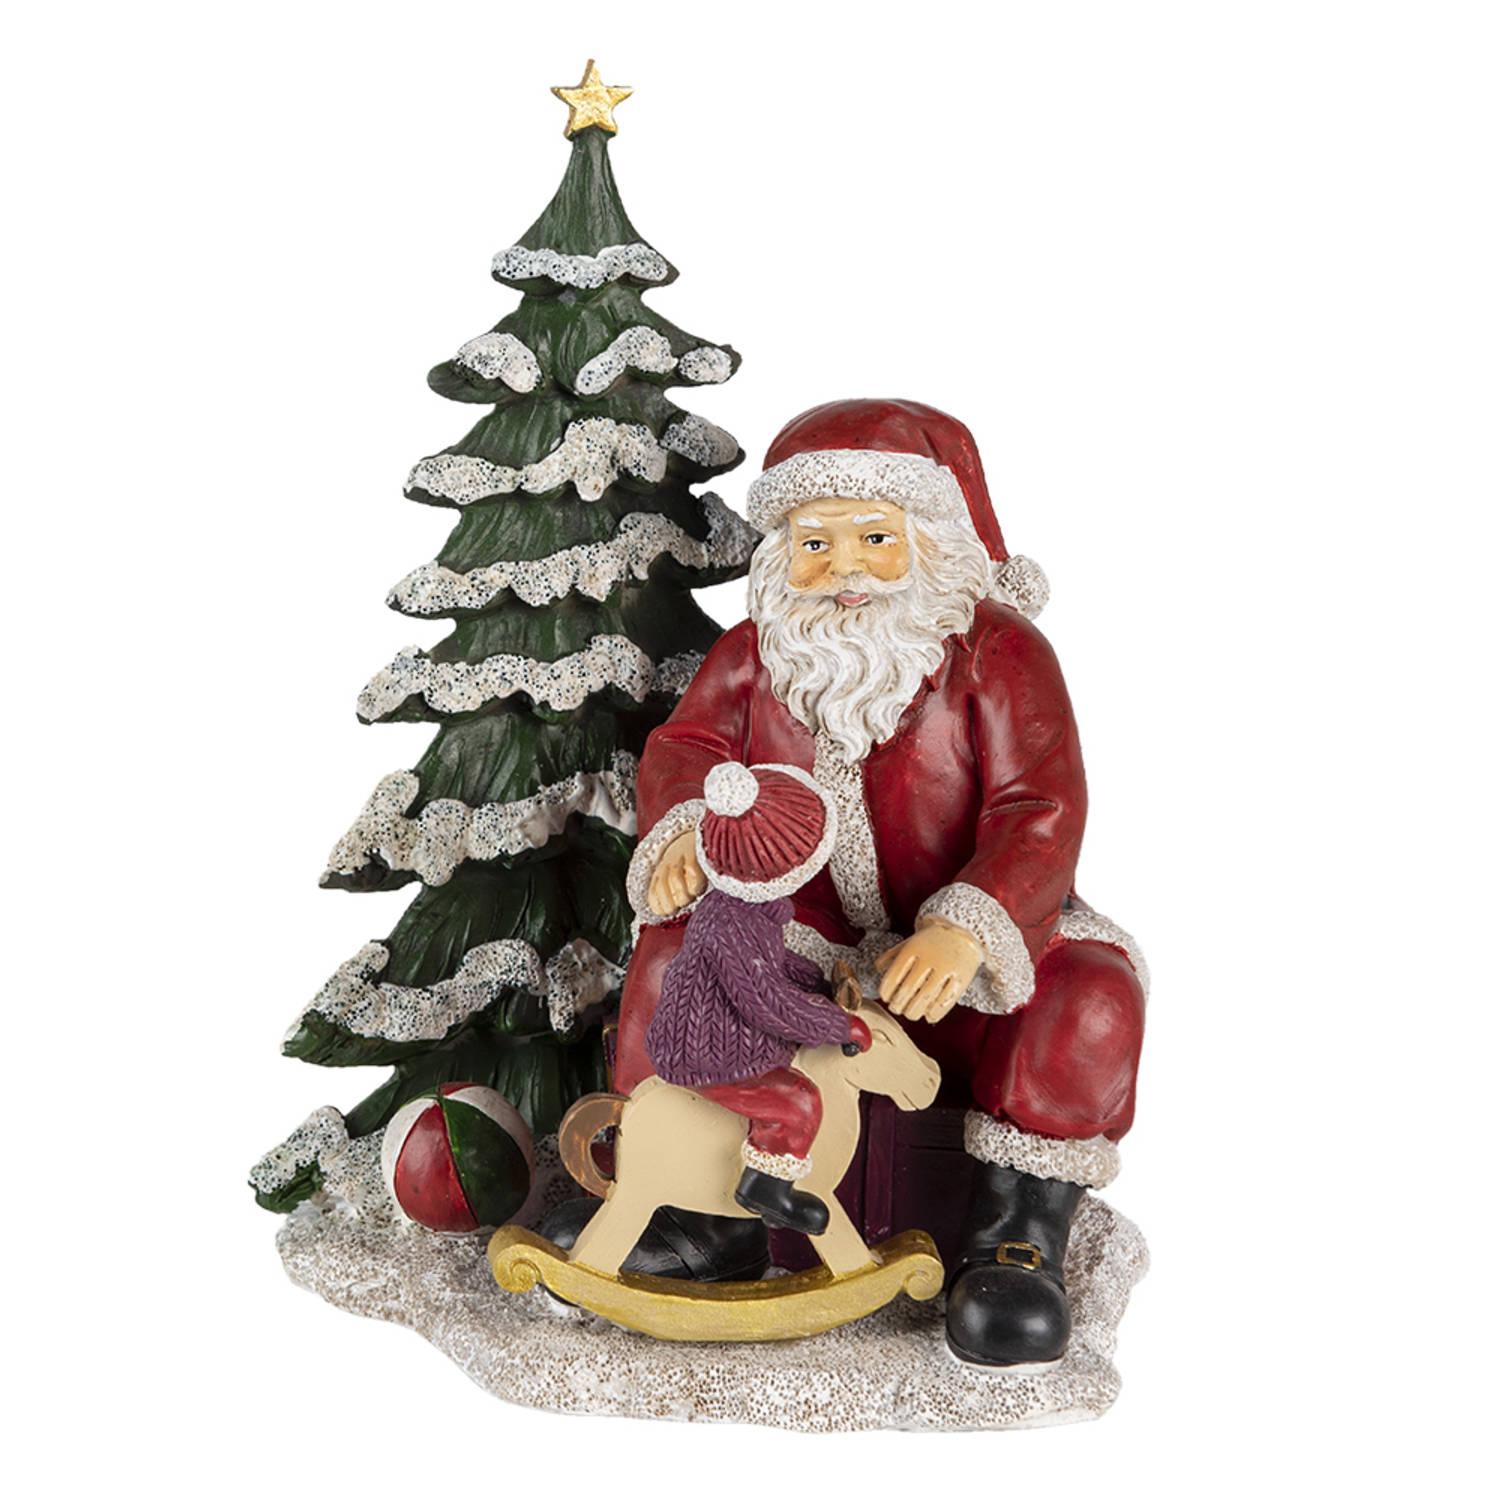 HAES DECO - Kerstman deco Figuur - Formaat 16x13x22 cm - Kleur Rood - Materiaal Polyresin - Kerst Figuur, Kerstdecoratie